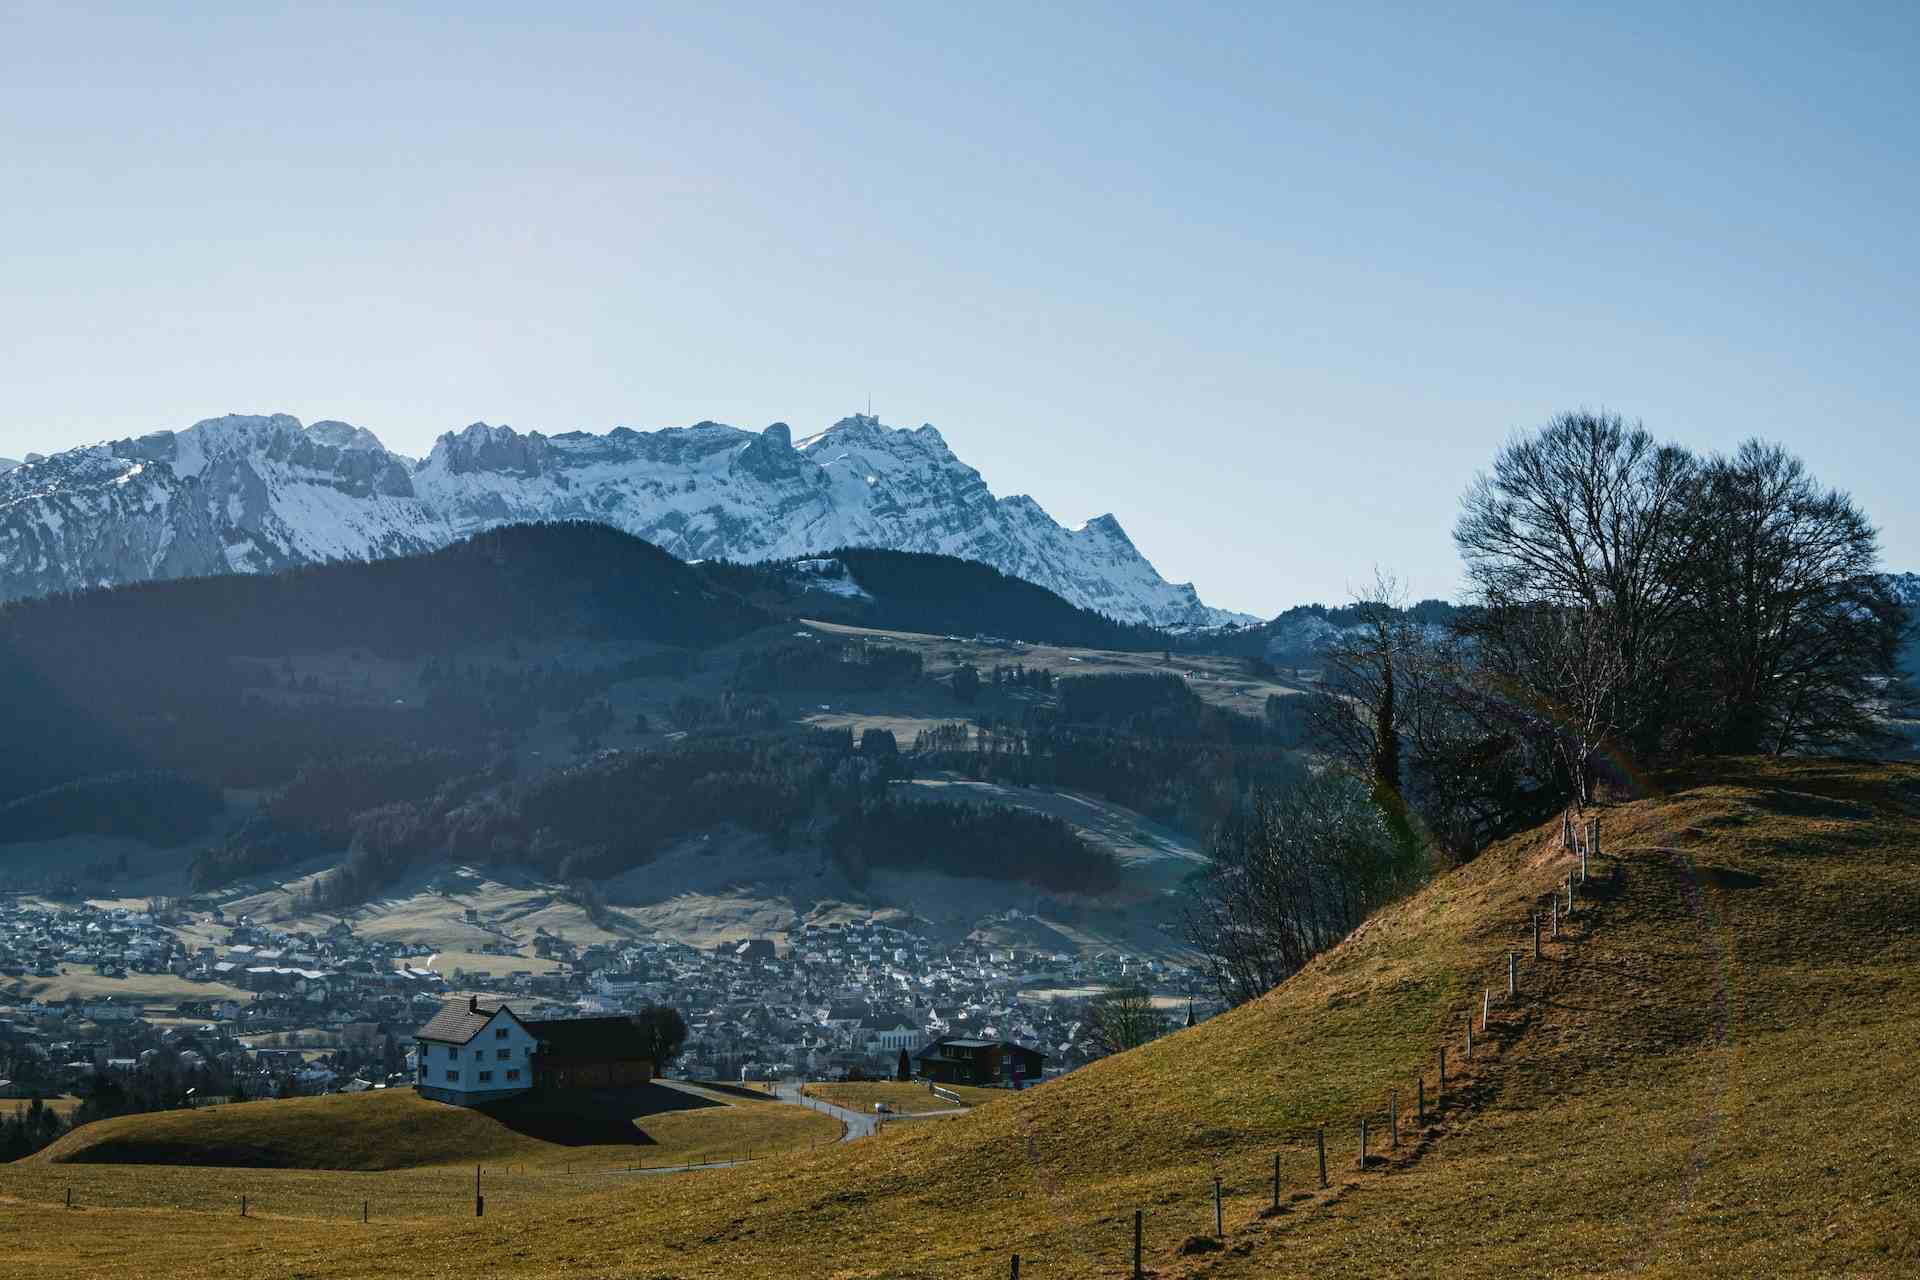 Delikatessen-Fleisch, producer in Rehetobel canton of Appenzell Ausserrhoden in Switzerland